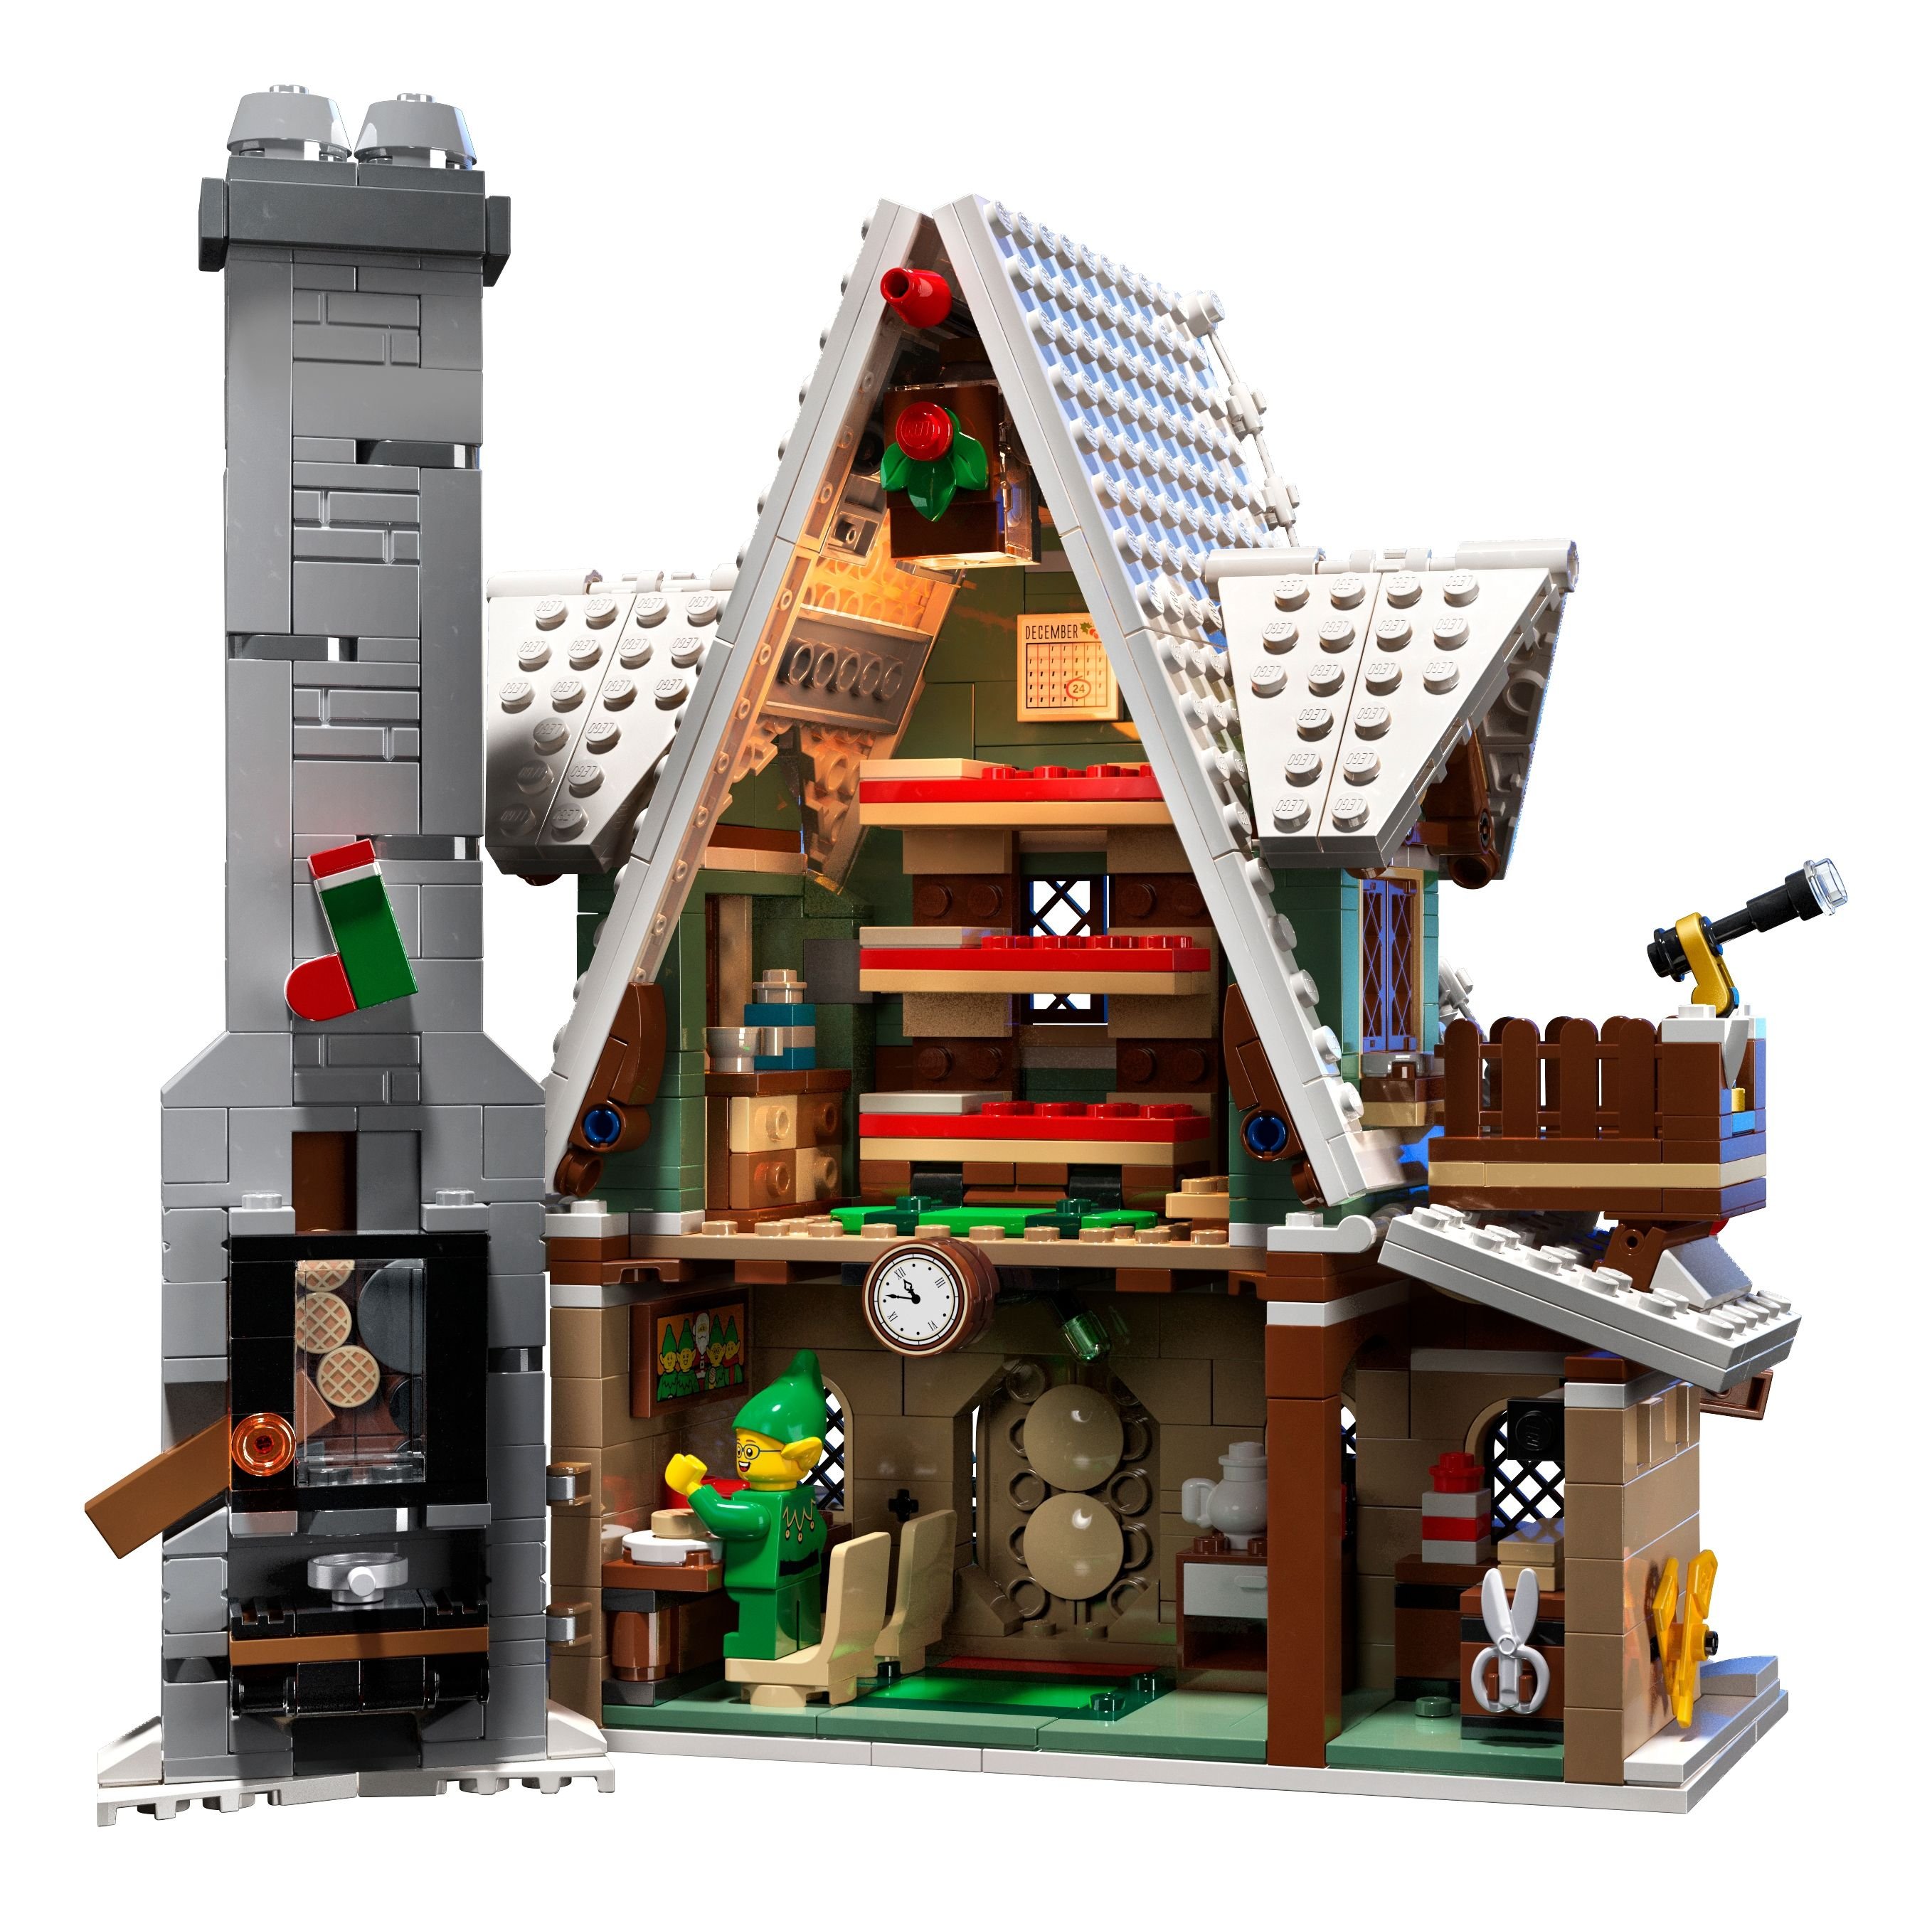 LEGO Advanced Models 10275 Winterliches Elfen Klubhaus LEGO_10275_alt3.jpg